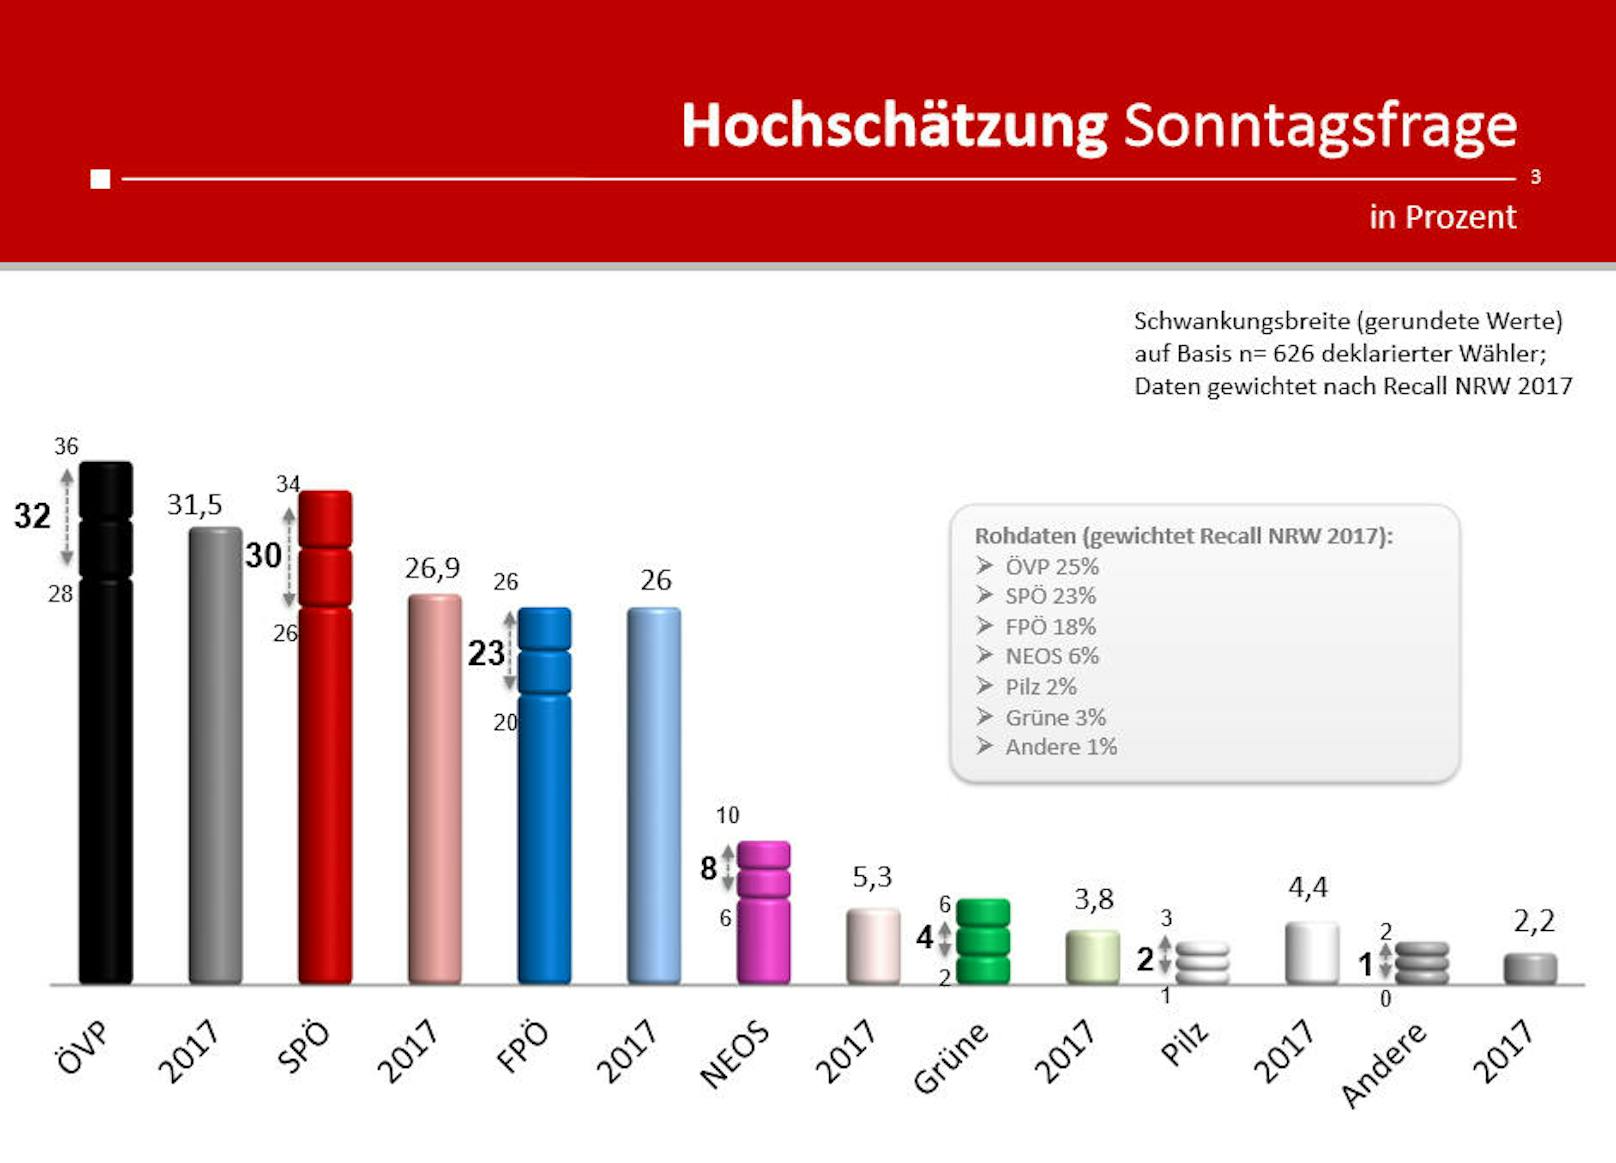 Während die SPÖ bei der Sonntagsfrage wieder etwas Rückenwind hat, schwächelt die FPÖ. Ein langfristiger Trend lässt sich davon allerdings nicht ableiten. (In Grau: Die Rohdaten der Umfrage gewichtet nach dem Recall der NRW 2017)